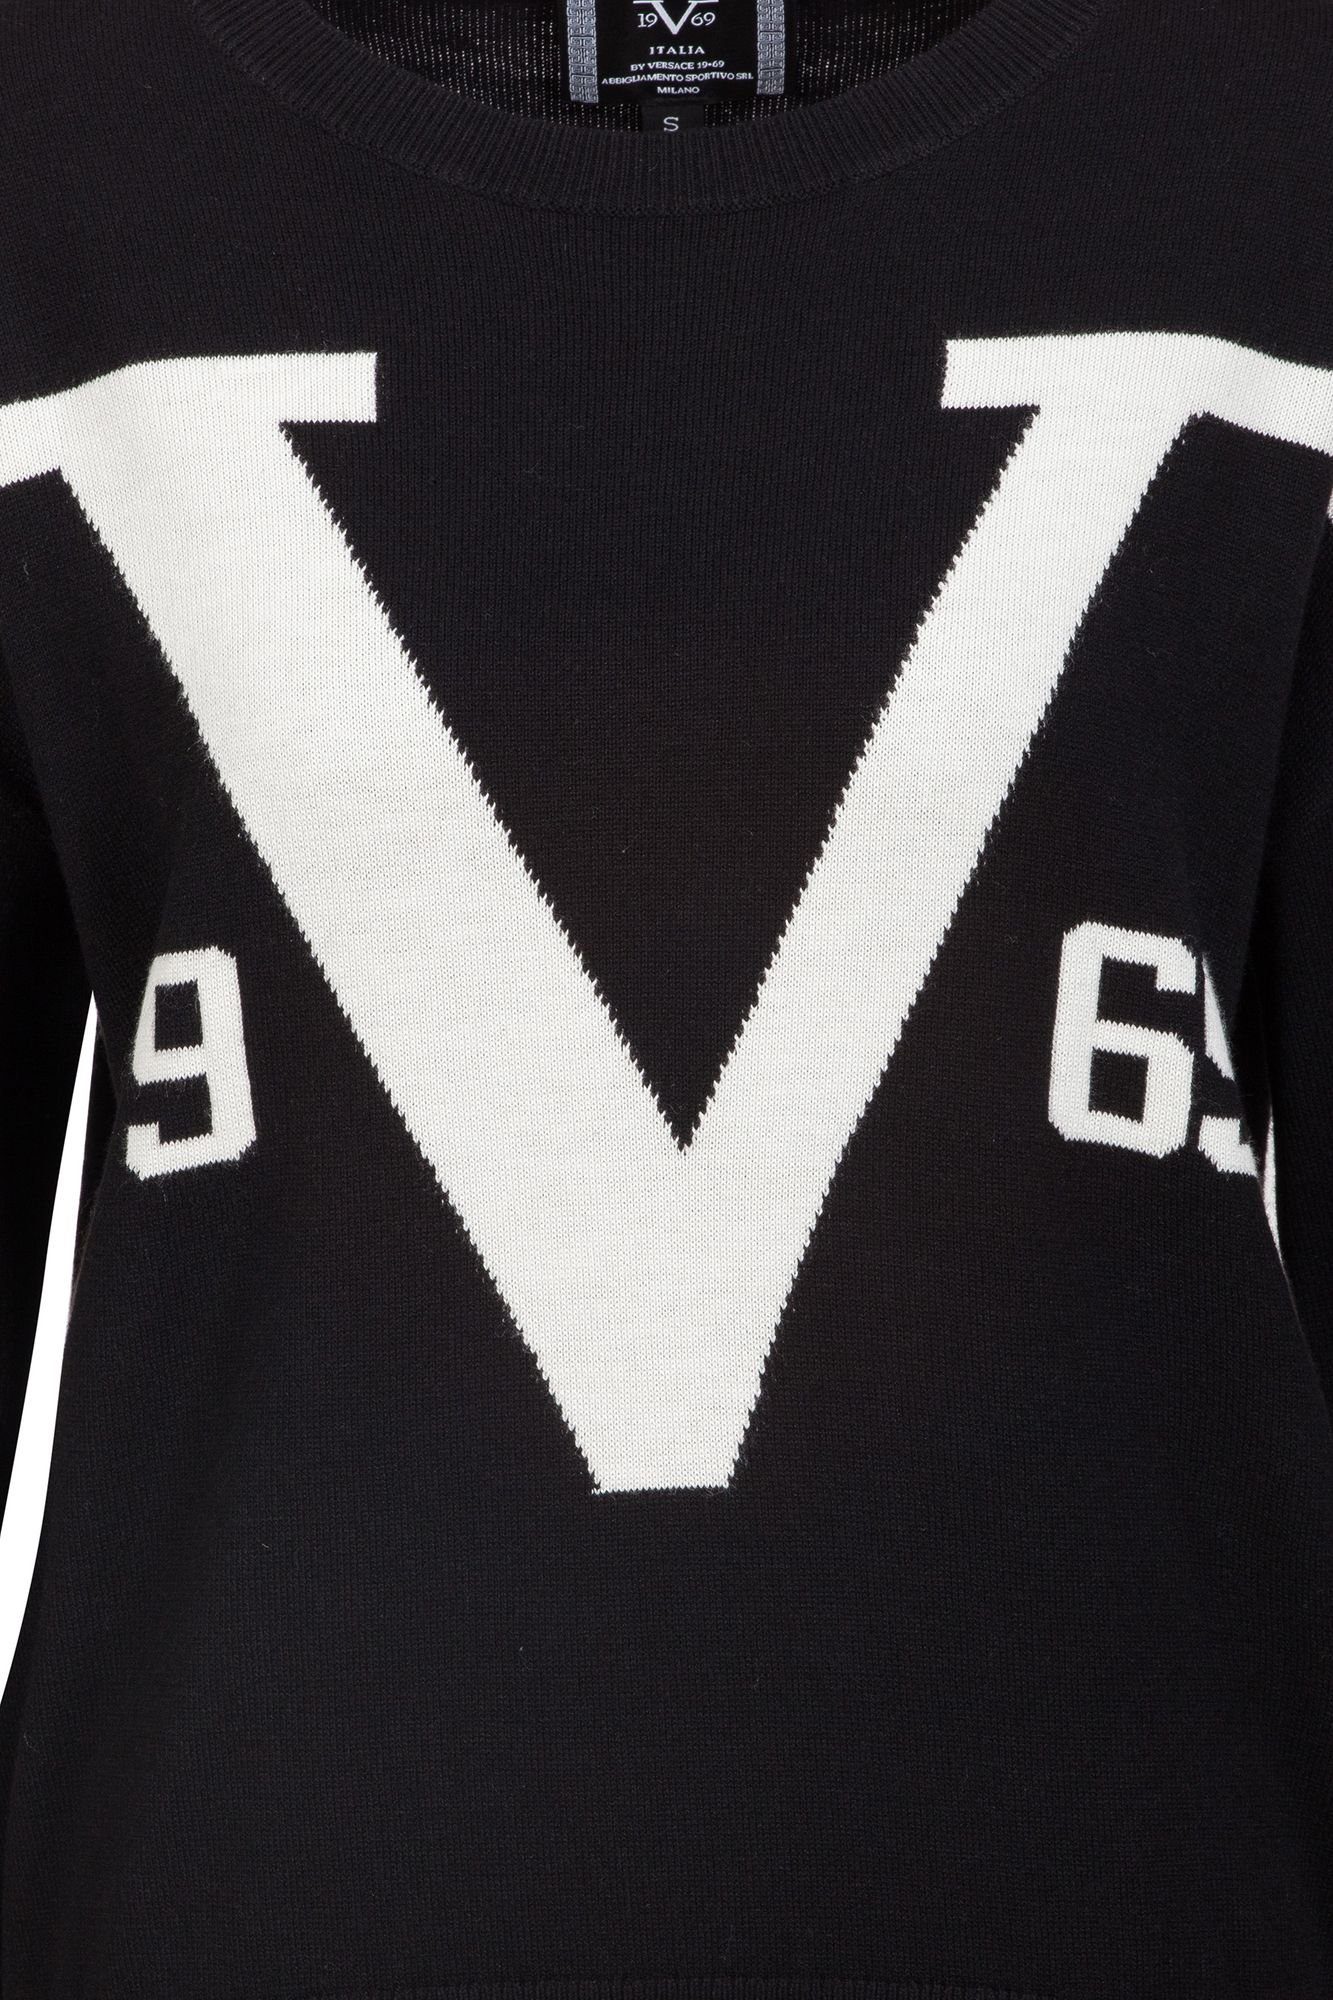 19V69 Versace - Cardigan Italia Sportivo by by Dodo SRL Versace